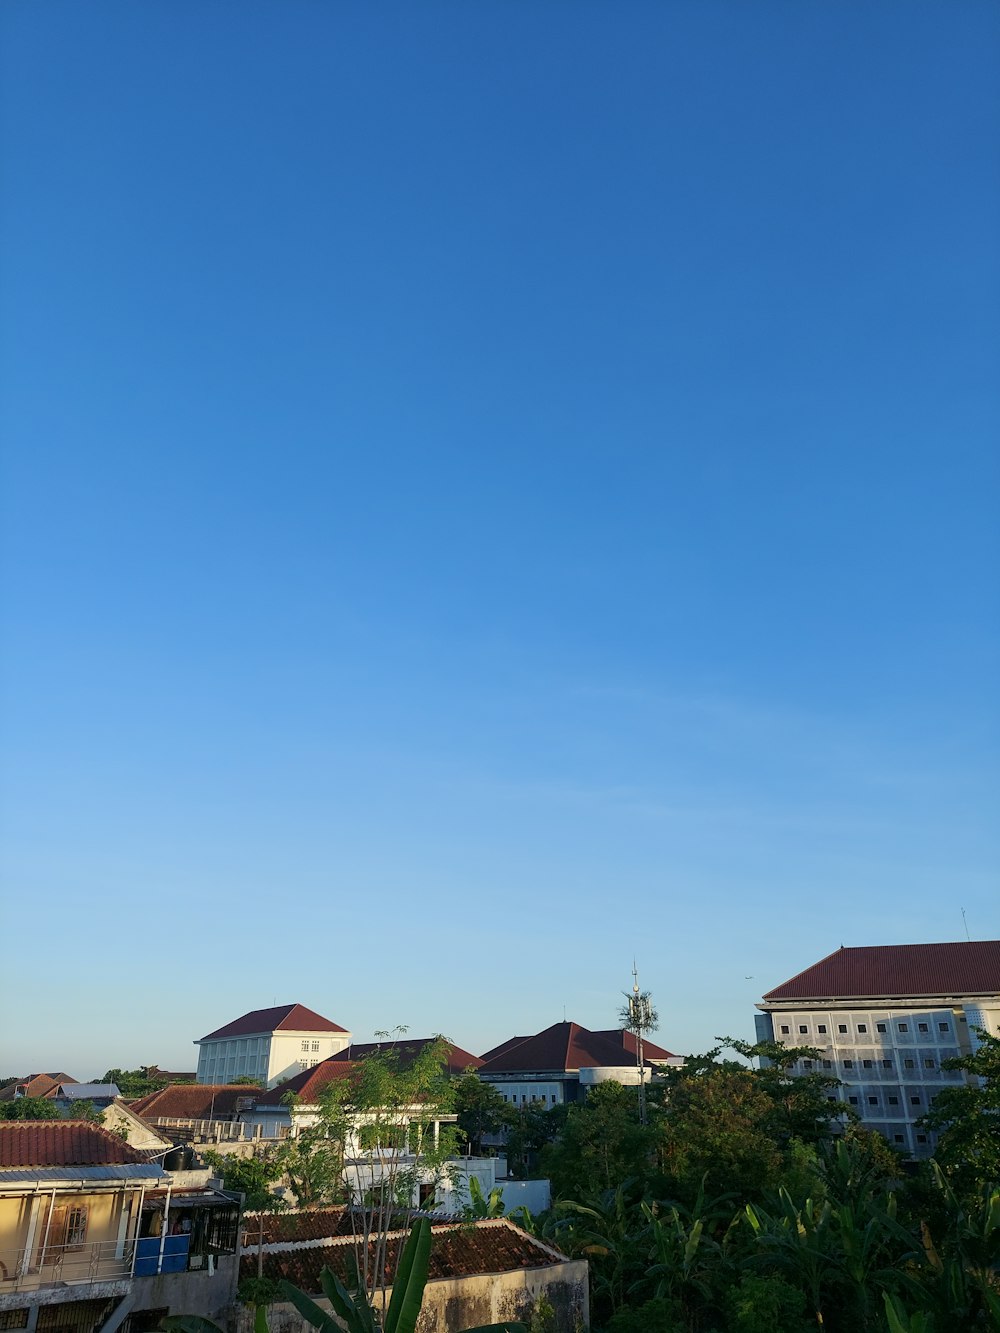 Un cielo azul claro con algunos edificios en el fondo